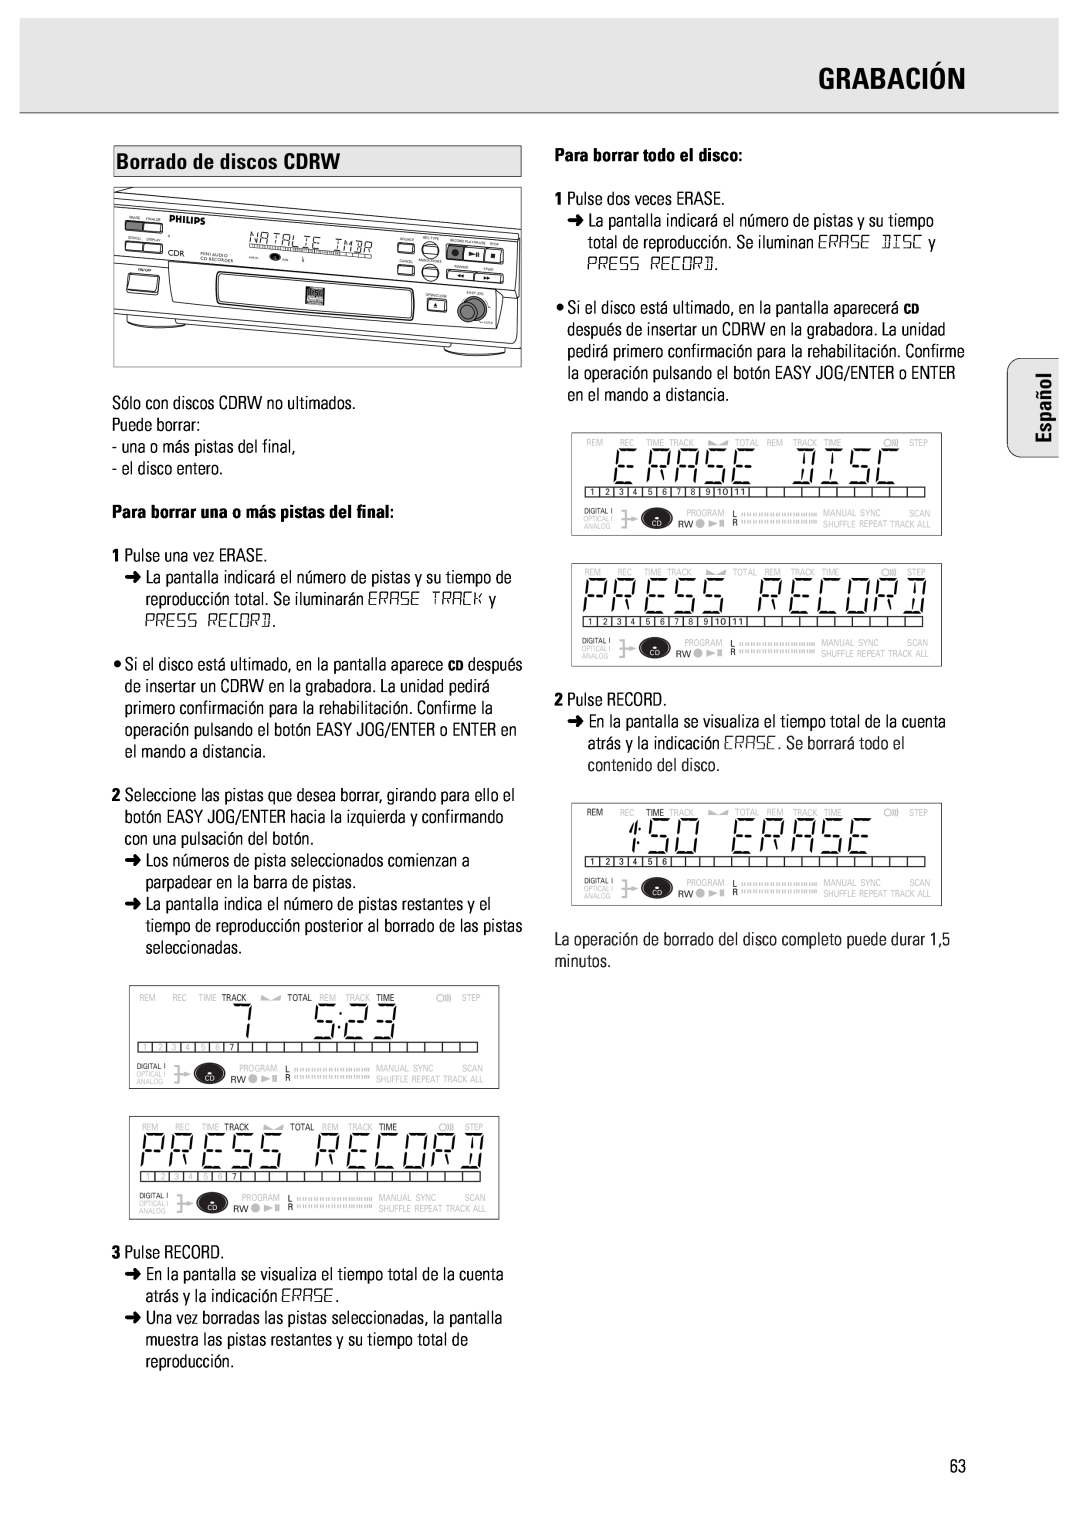 Philips CDR570 manual Grabación, Borrado de discos CDRW, Español, Para borrar una o más pistas del final 